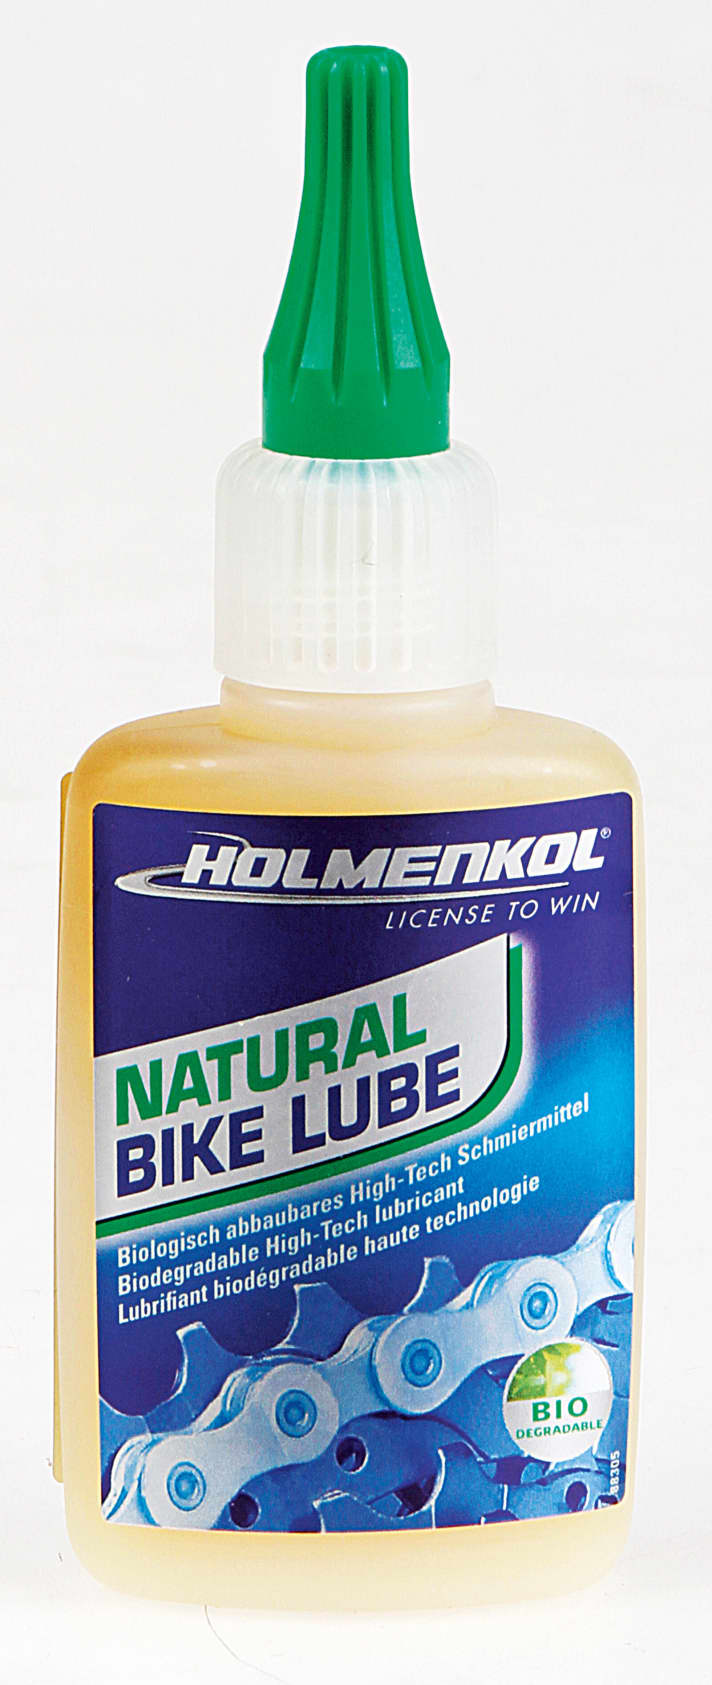   Holmenkol Natural Bike Lube